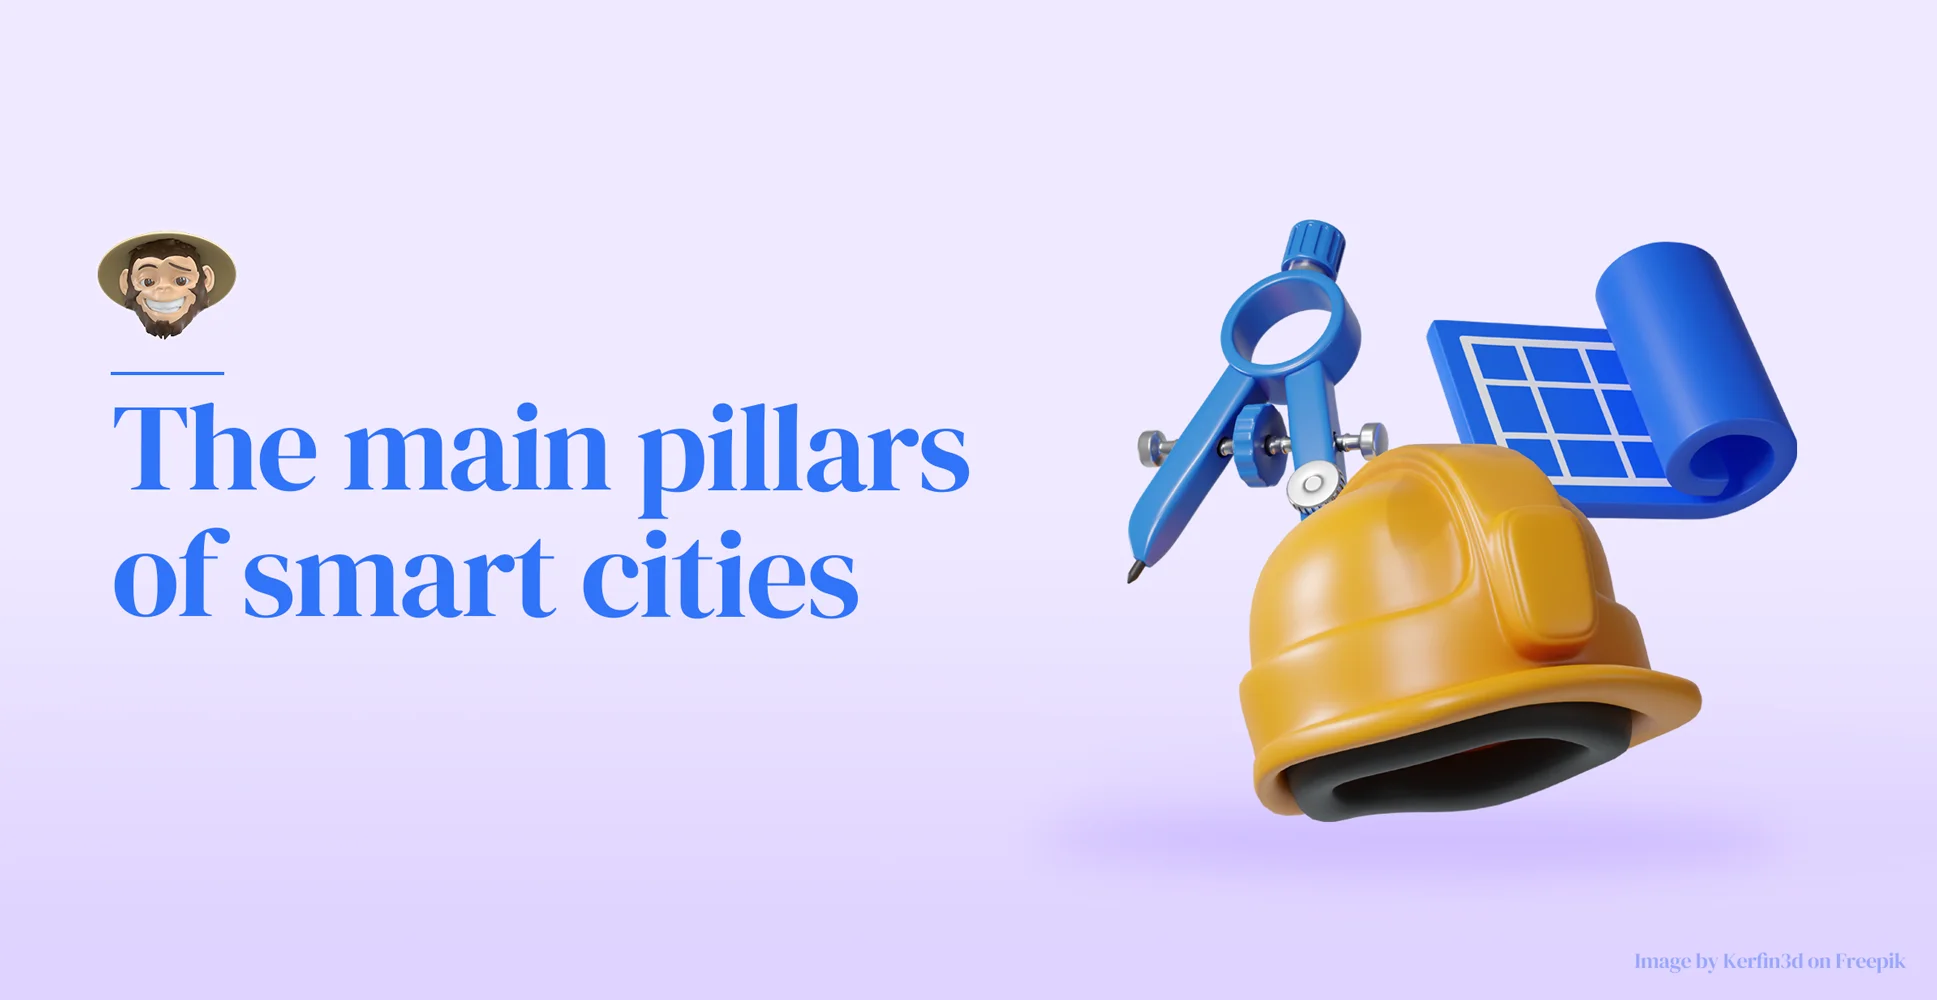 The main pillars of smart cities